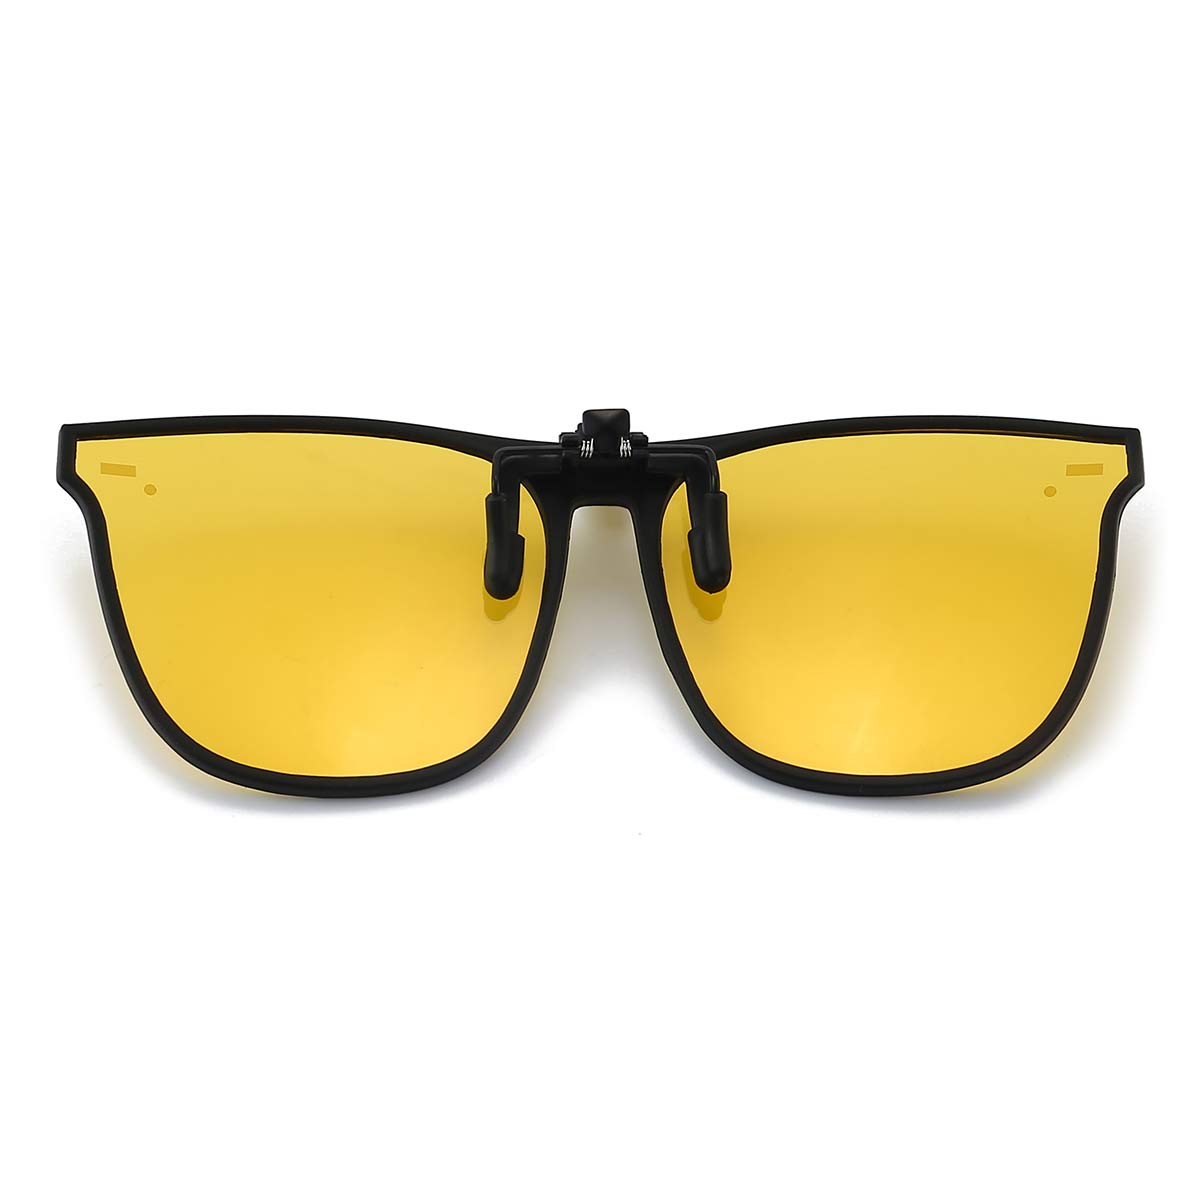 Yellow Eyeglass Chain - Thalia